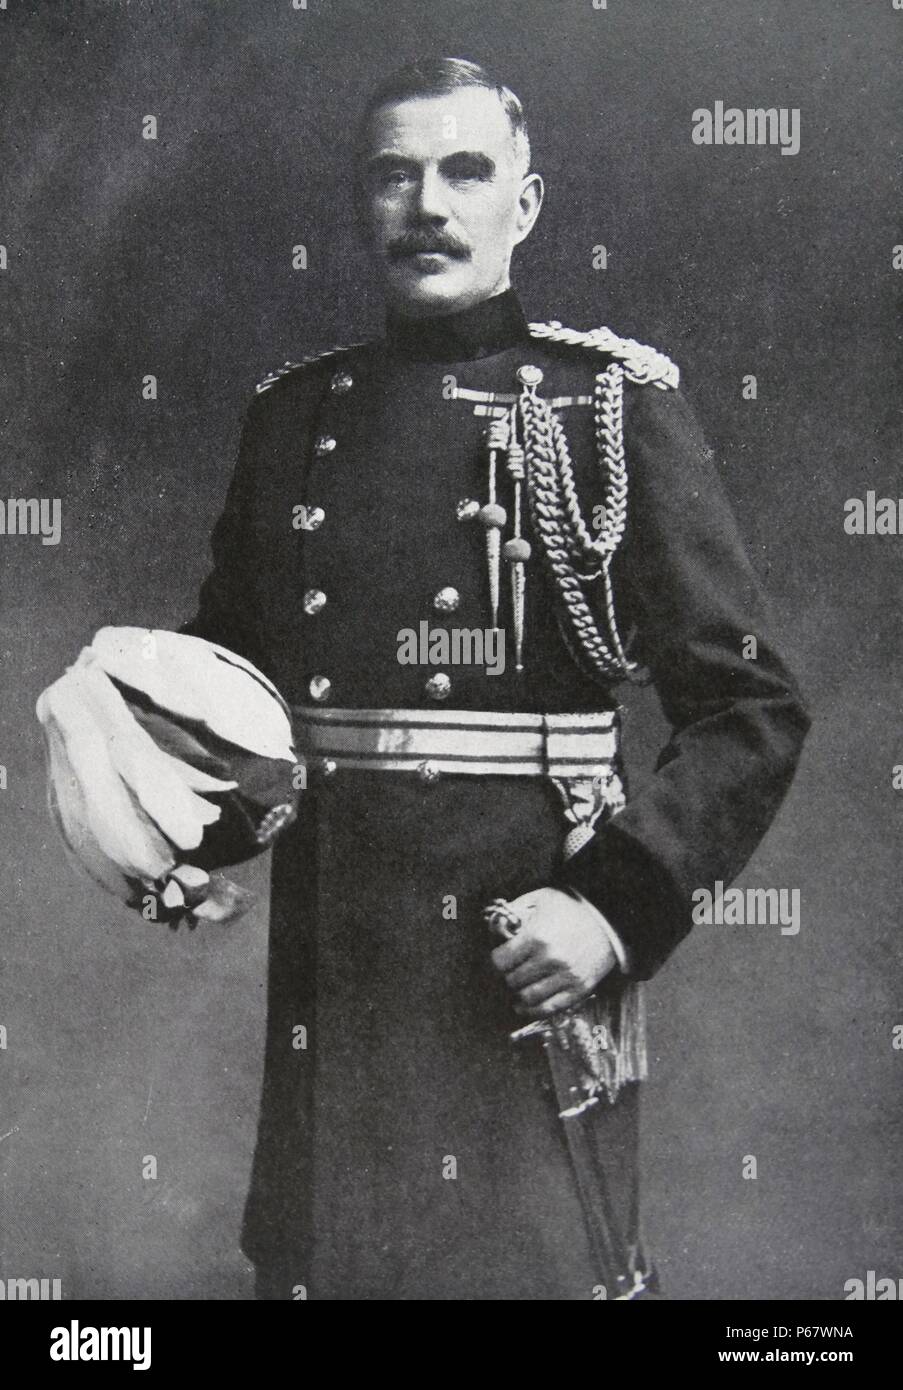 Feldmarschall Sir William Robert Robertson (29. Januar 1860 bis 12. Februar 1933). Britische Armee Offizier, der als Chef der Kaiserliche General Personal serviert, von 1916 bis 1918, während des Ersten Weltkriegs. Stockfoto